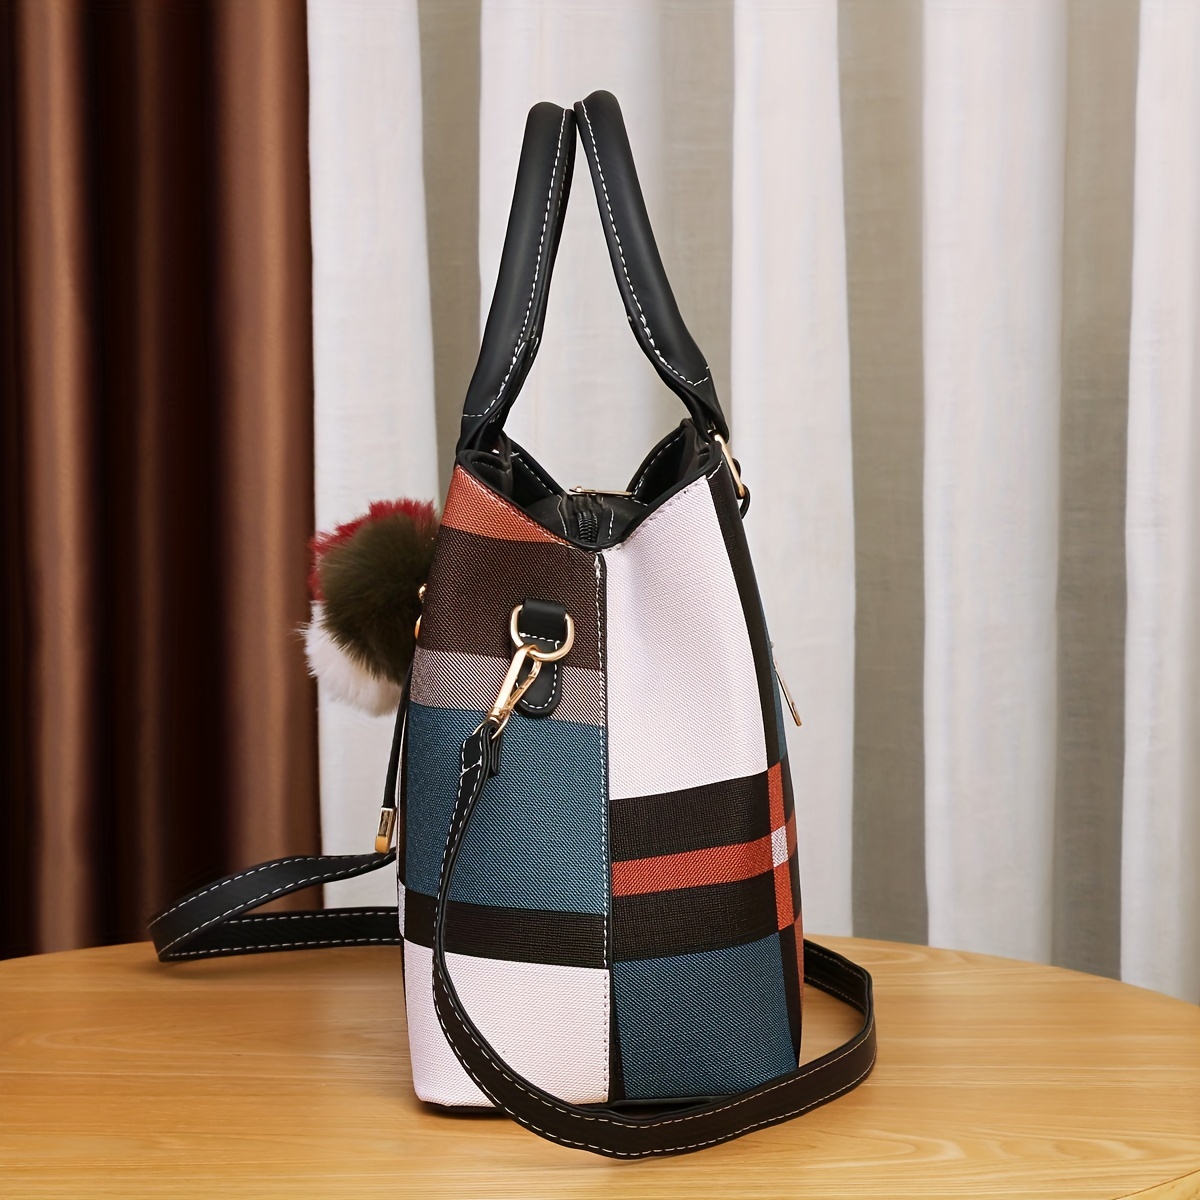 Black and White Purse Handbag with Shoulder Strap, Cute Checkered Check Plaid High Grade PU Leather Women Designer Handbag